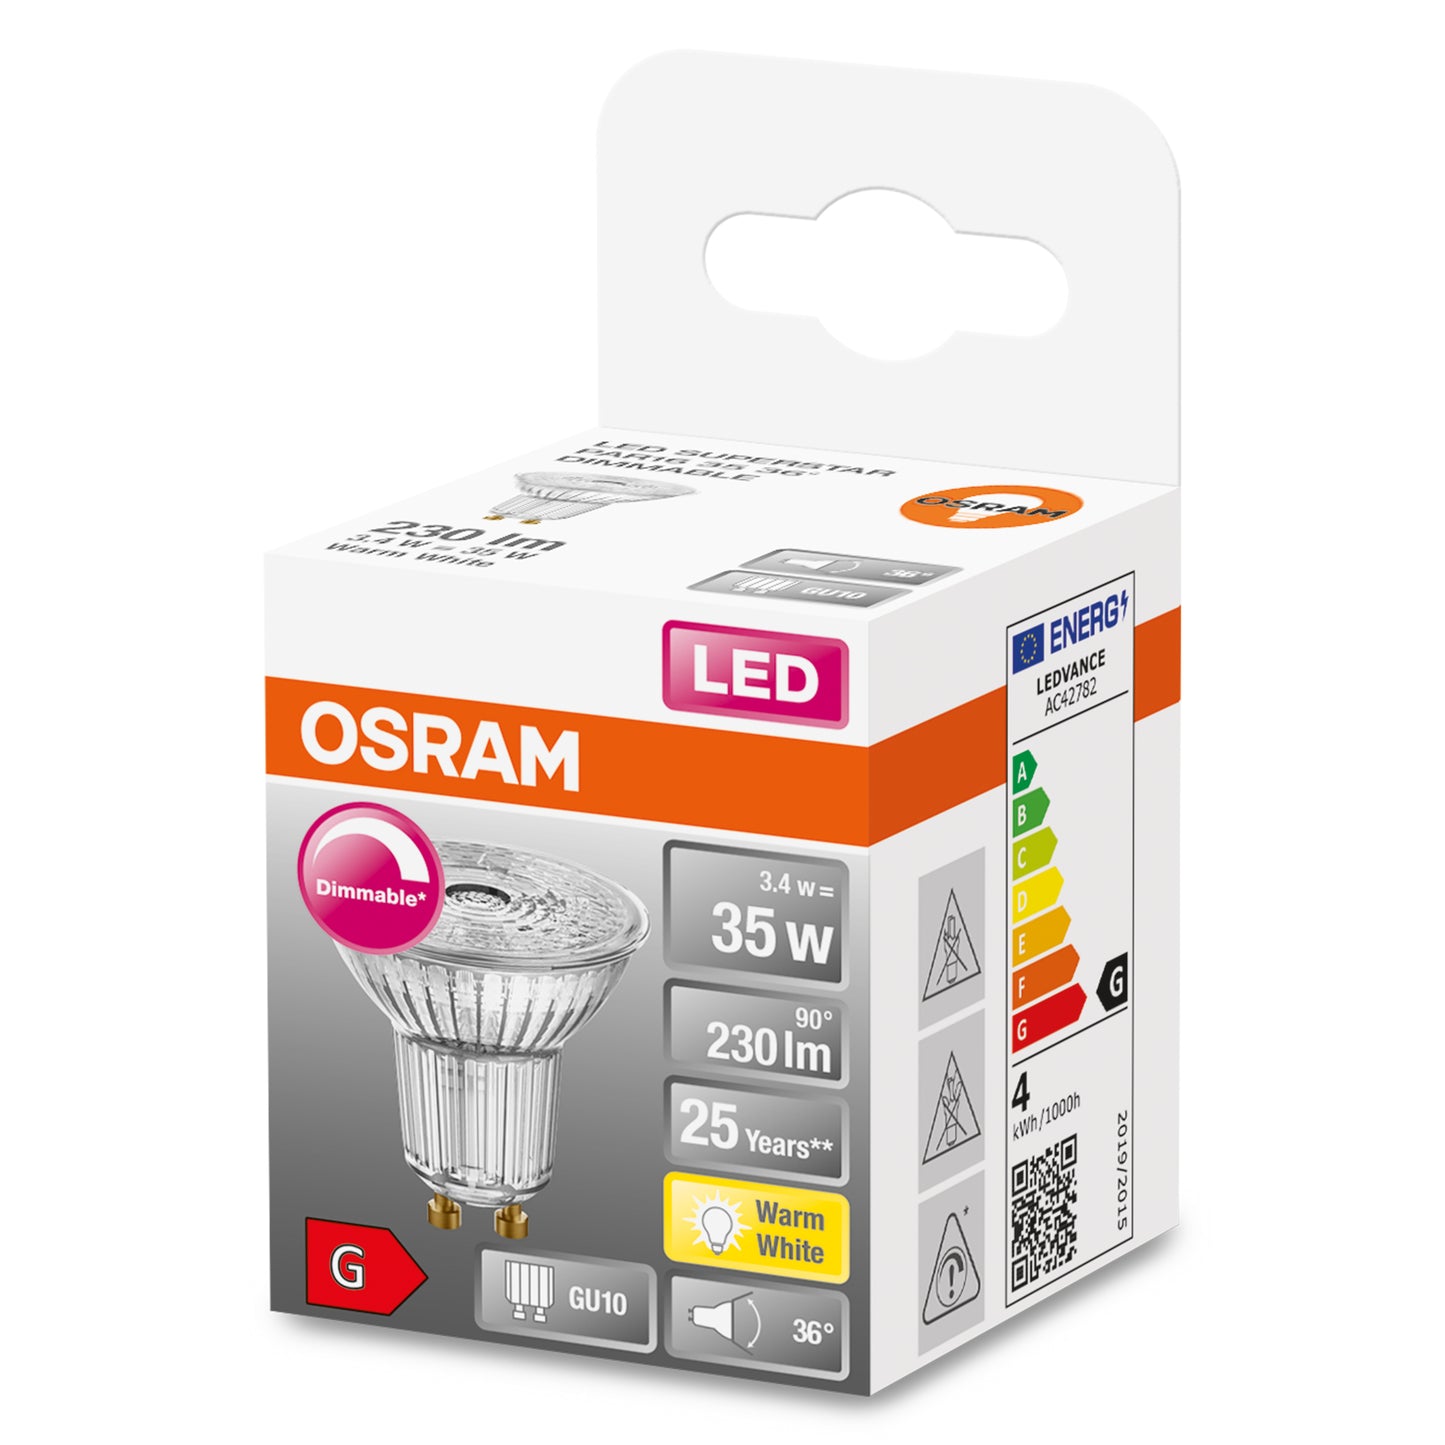 OSRAM LED GU10 3,4W = 35W Reflektor 230lm 36° Warmweiß 2700K DIMMBAR